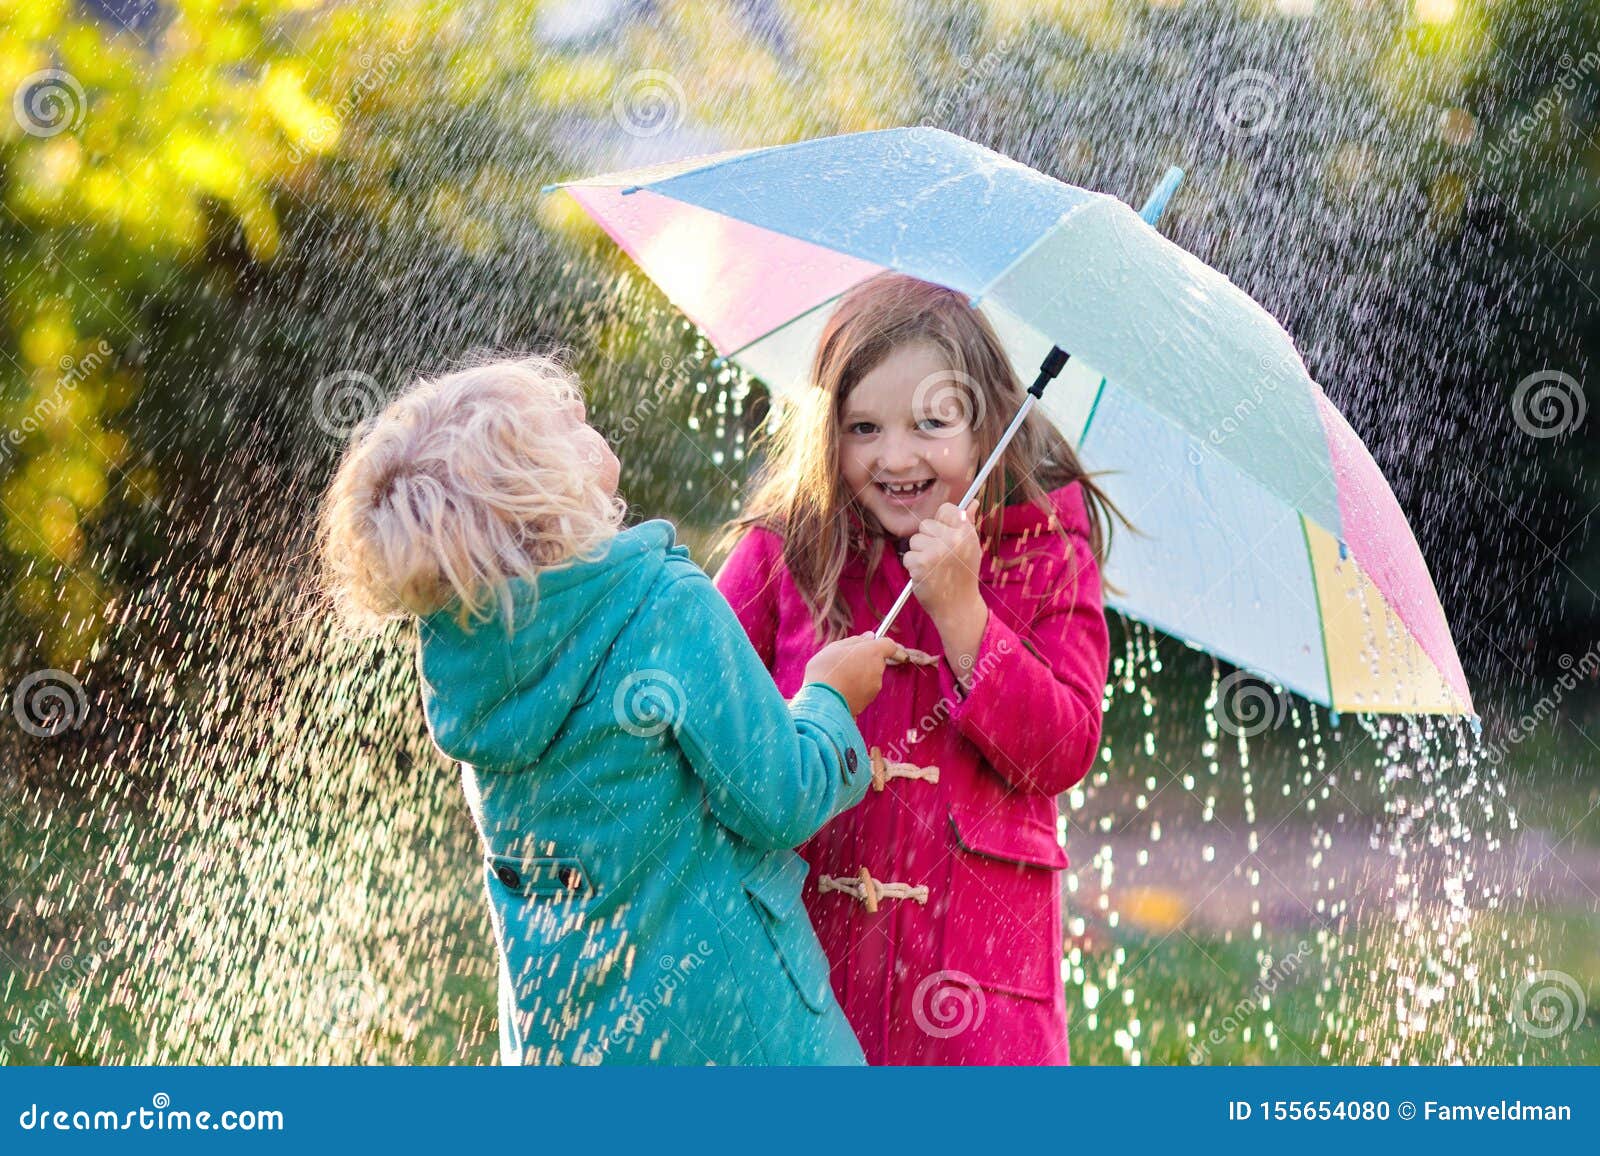 kinder mit dem regenschirm der im herbstduschregen spielt